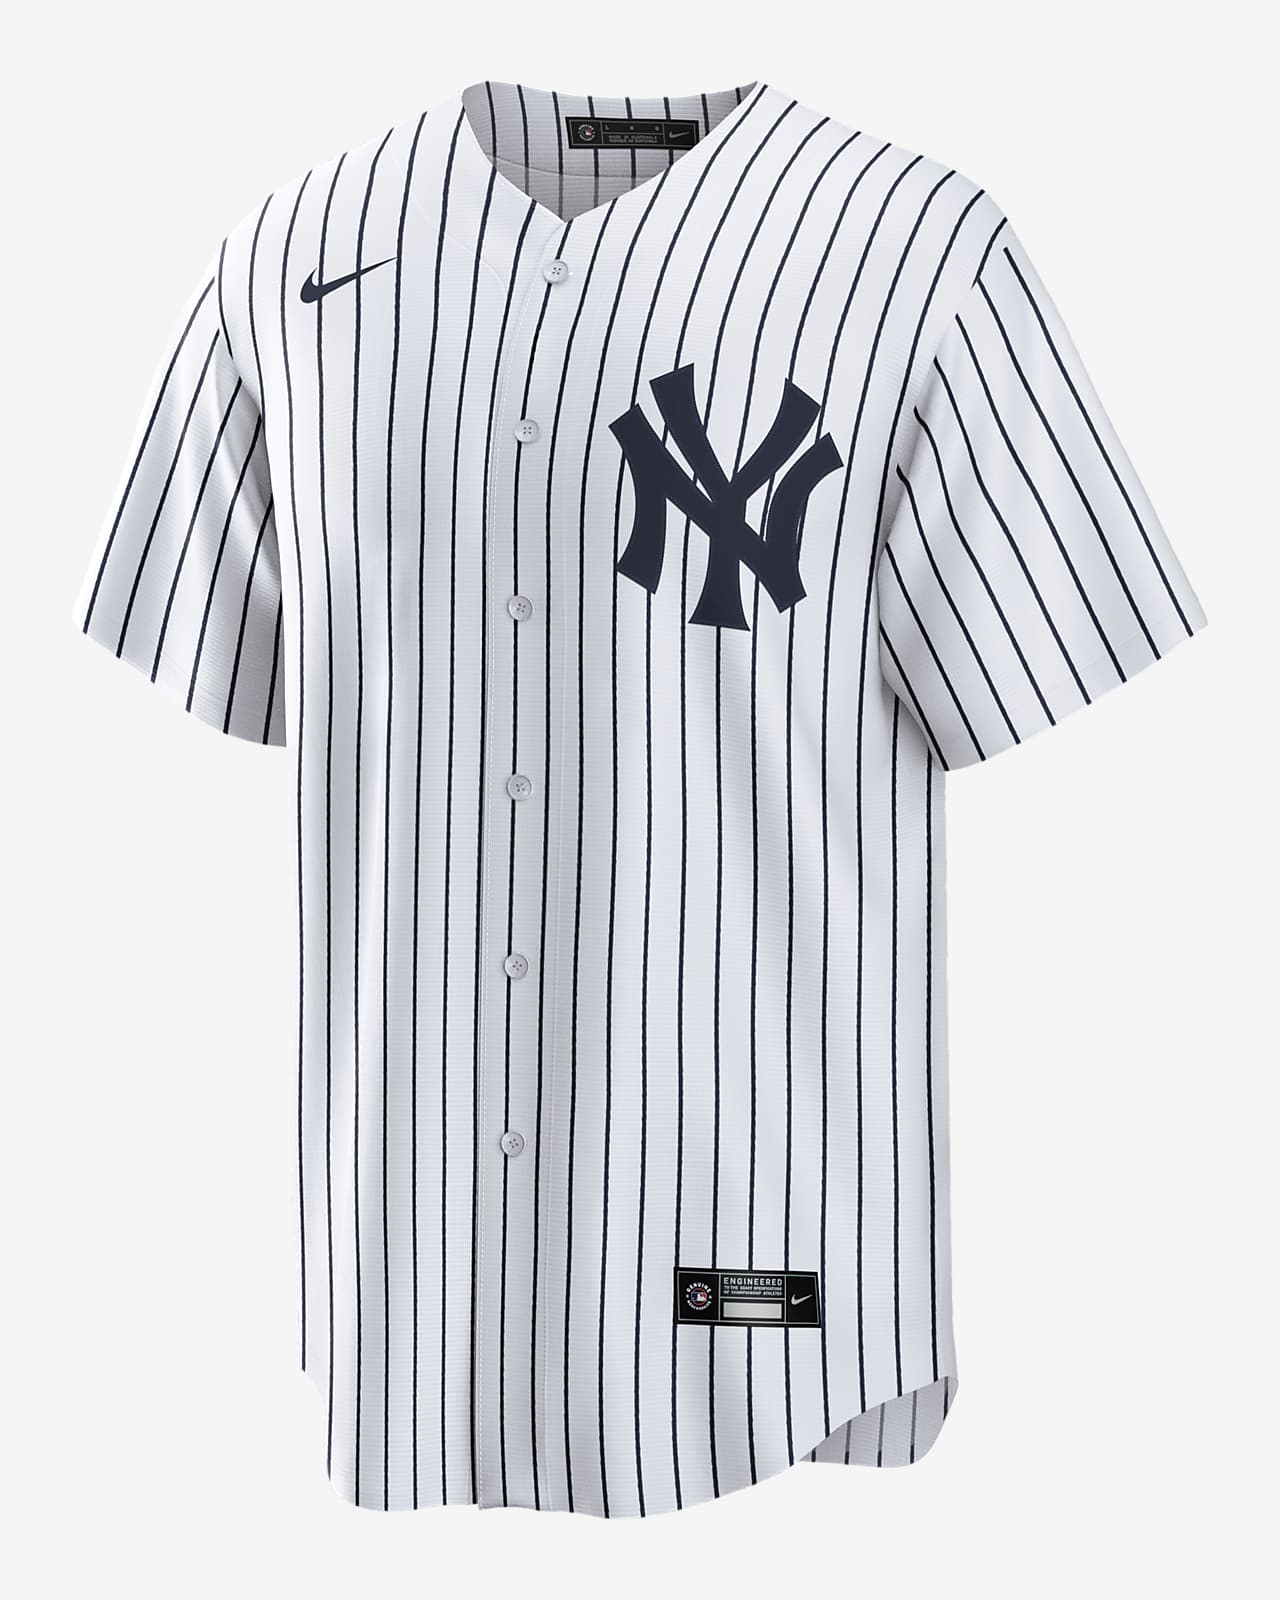 Ik was mijn kleren Mos Verdorren MLB New York Yankees (Aaron Judge) Men's Replica Baseball Jersey. Nike.com